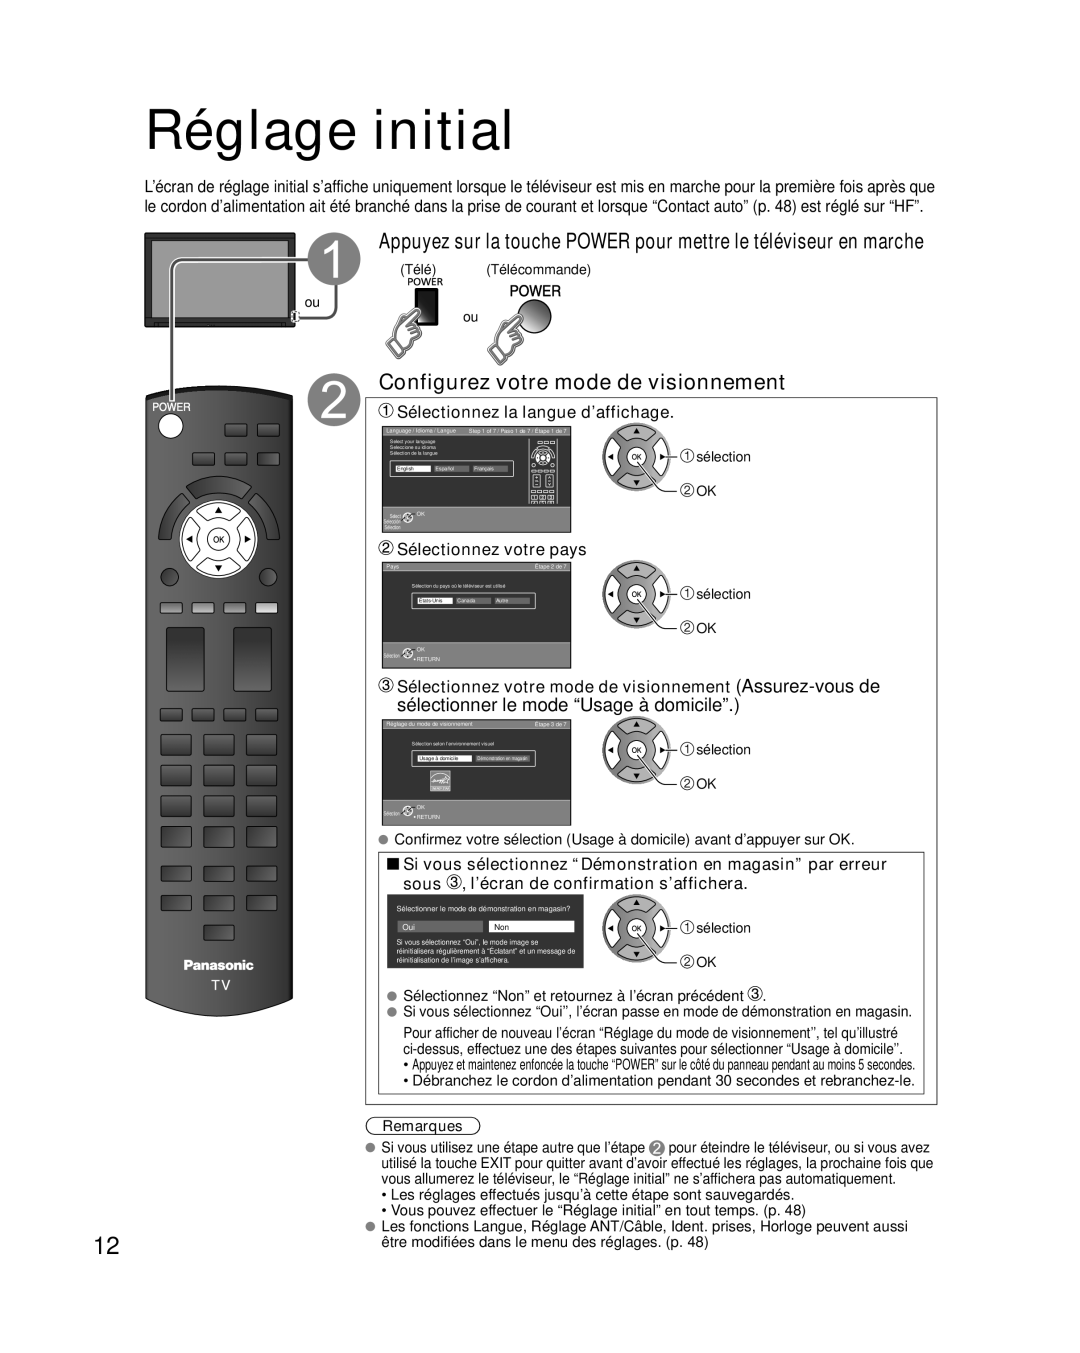 Panasonic TC-L32E3 Réglage initial, Configurez votre mode de visionnement, Sélectionnez la langue d’affichage, Remarques 